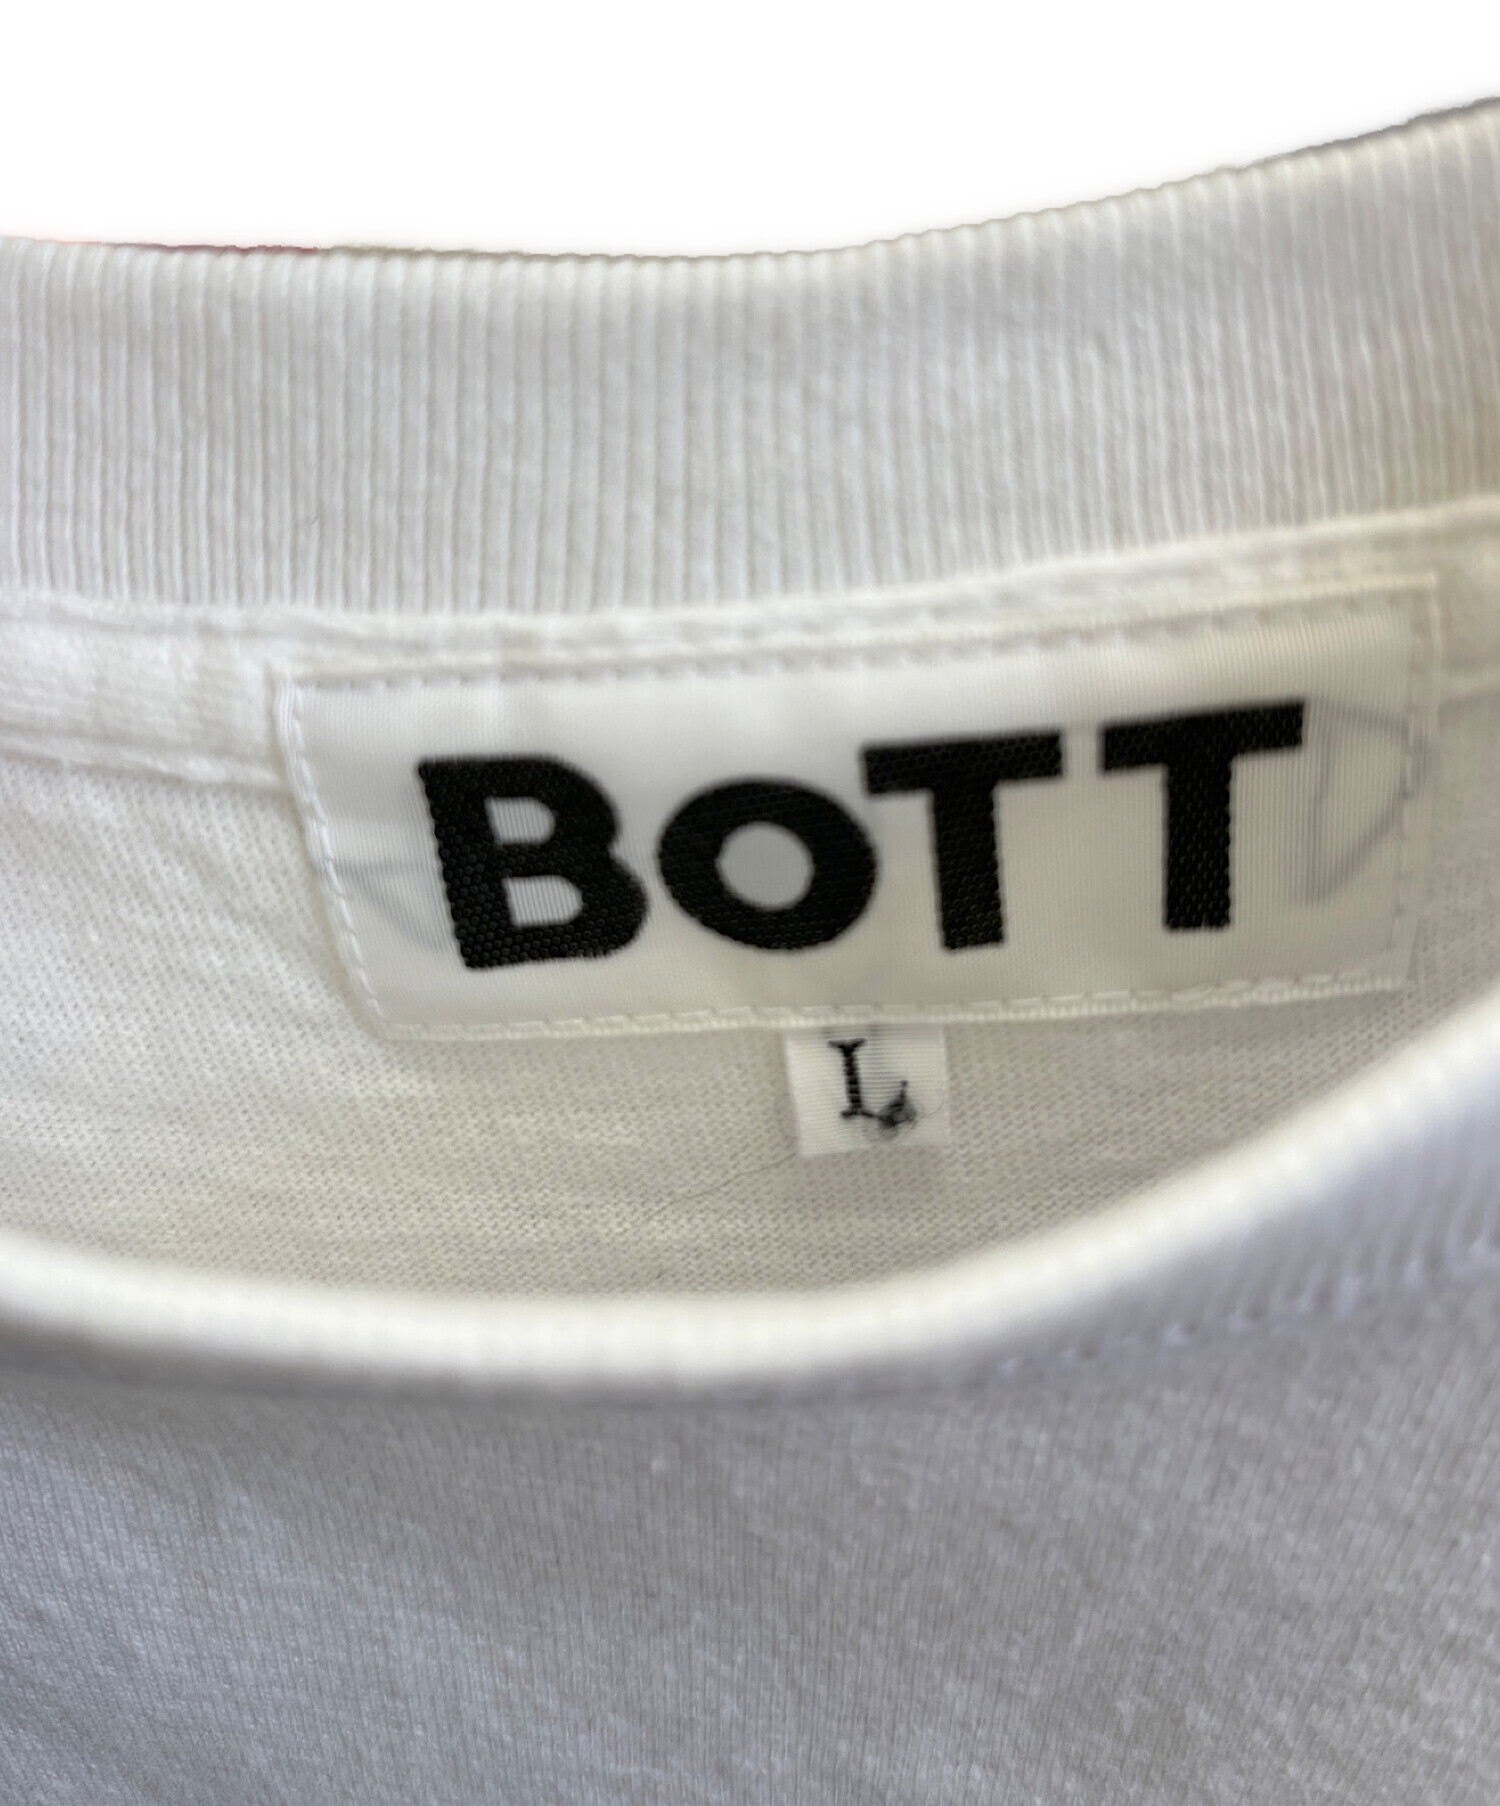 BoTT× Creative Drug Store (ボット×クリエイティブドラッグストア) プリントTシャツ ホワイト サイズ:L